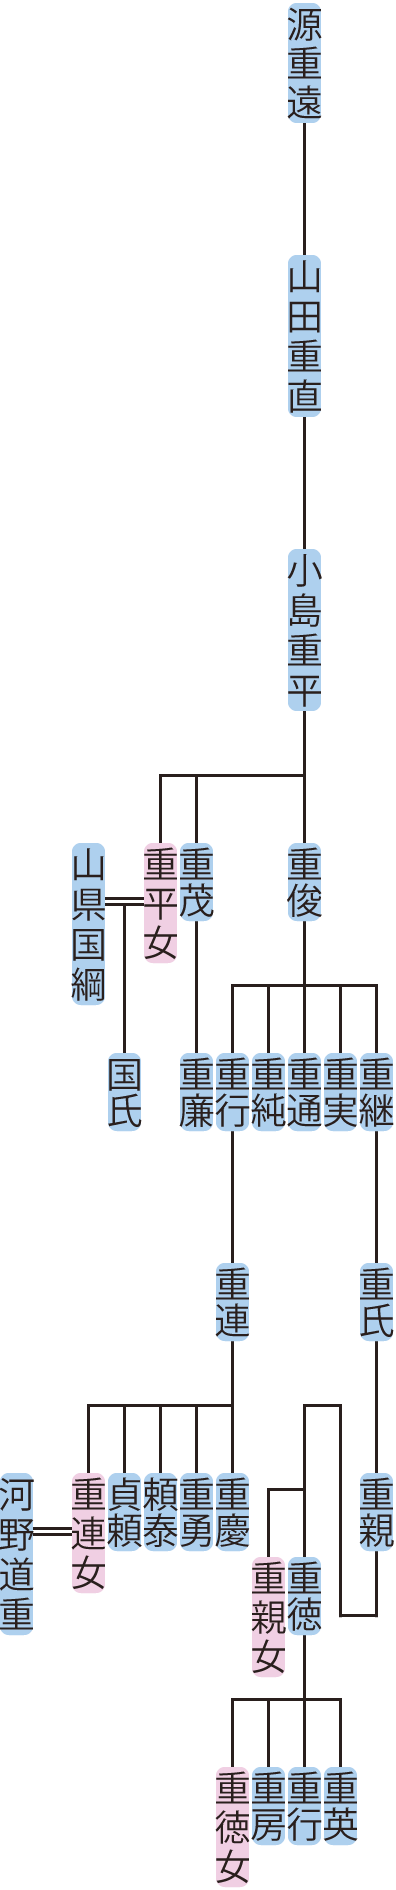 小島重平の系図